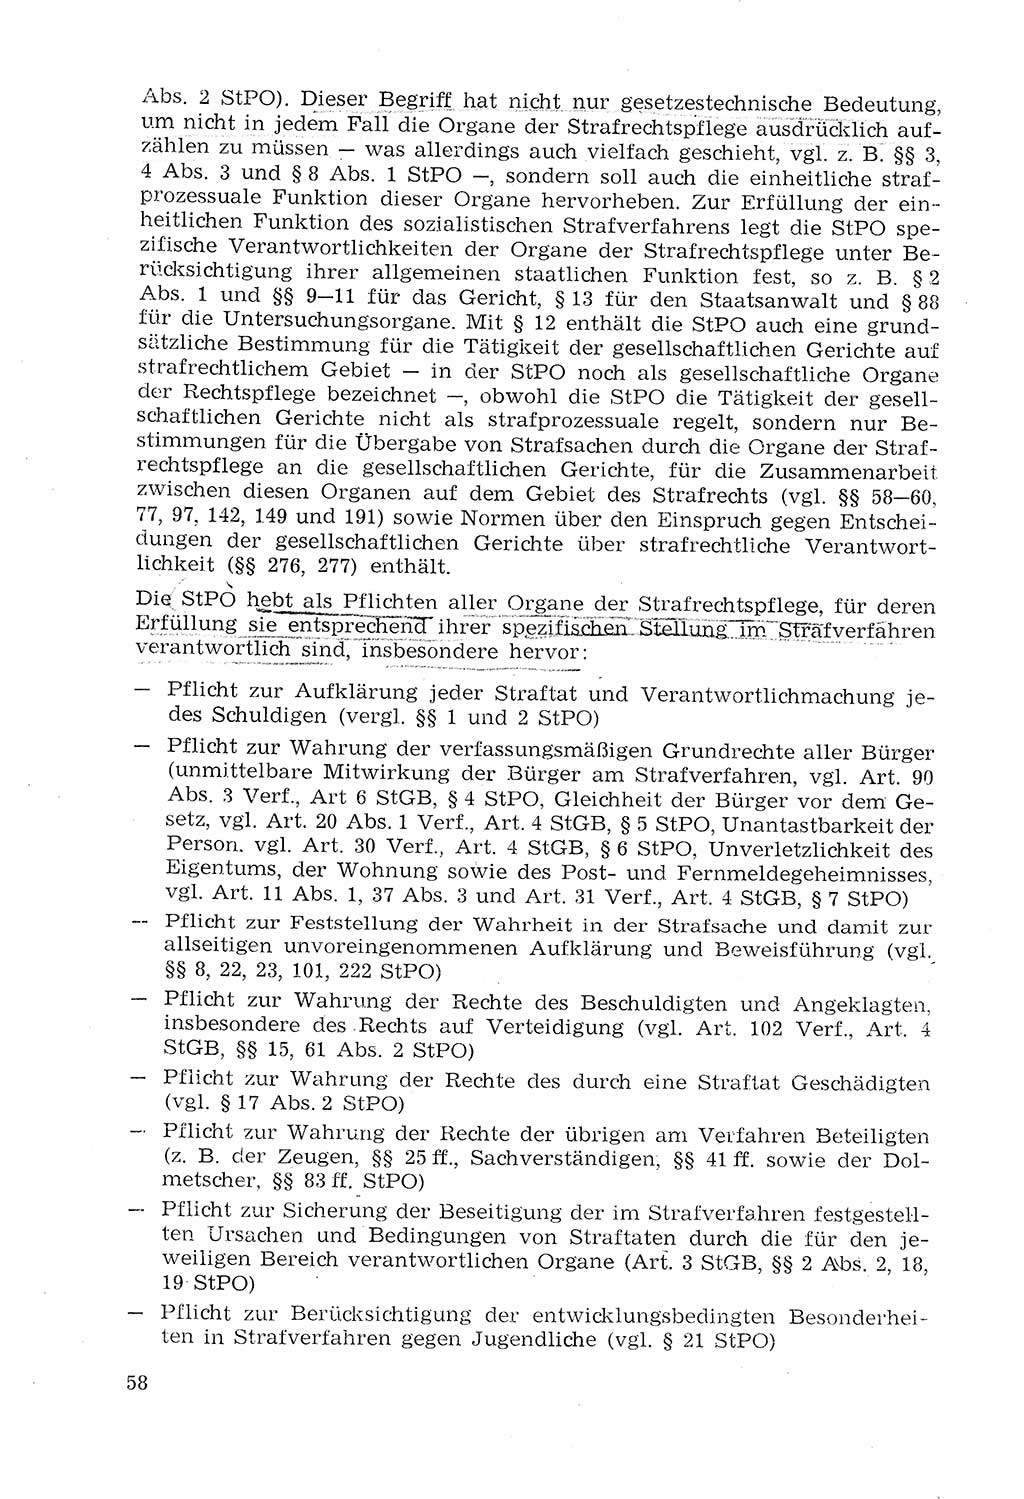 Strafprozeßrecht der DDR (Deutsche Demokratische Republik), Lehrmaterial 1969, Seite 58 (Strafprozeßr. DDR Lehrmat. 1969, S. 58)